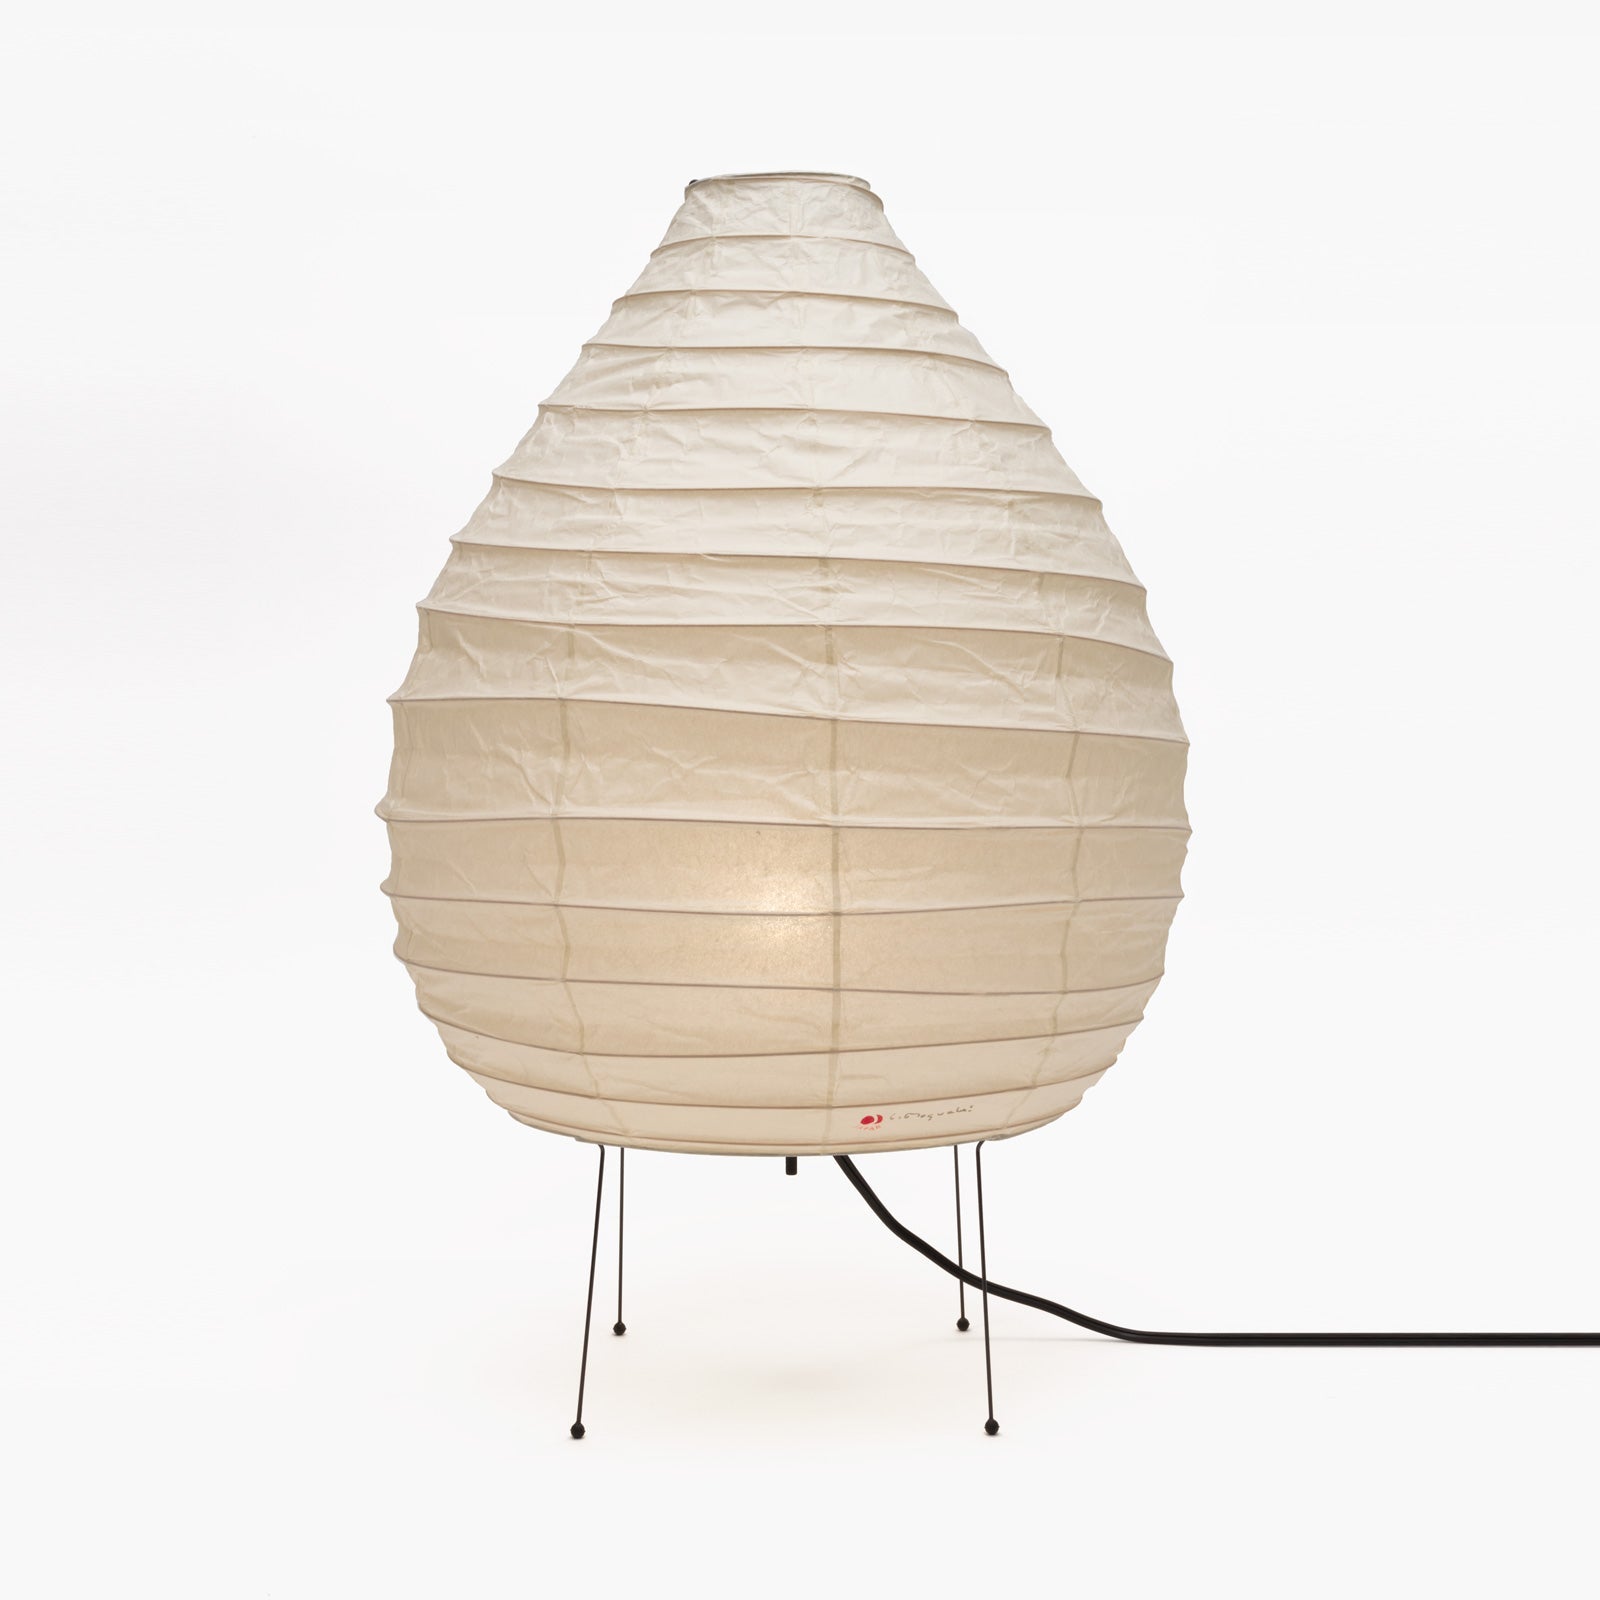 Akari 22n Paper Lantern Lamp - Timeless Japanese Design By Isamu Noguchi - Minimalist Table Lamps